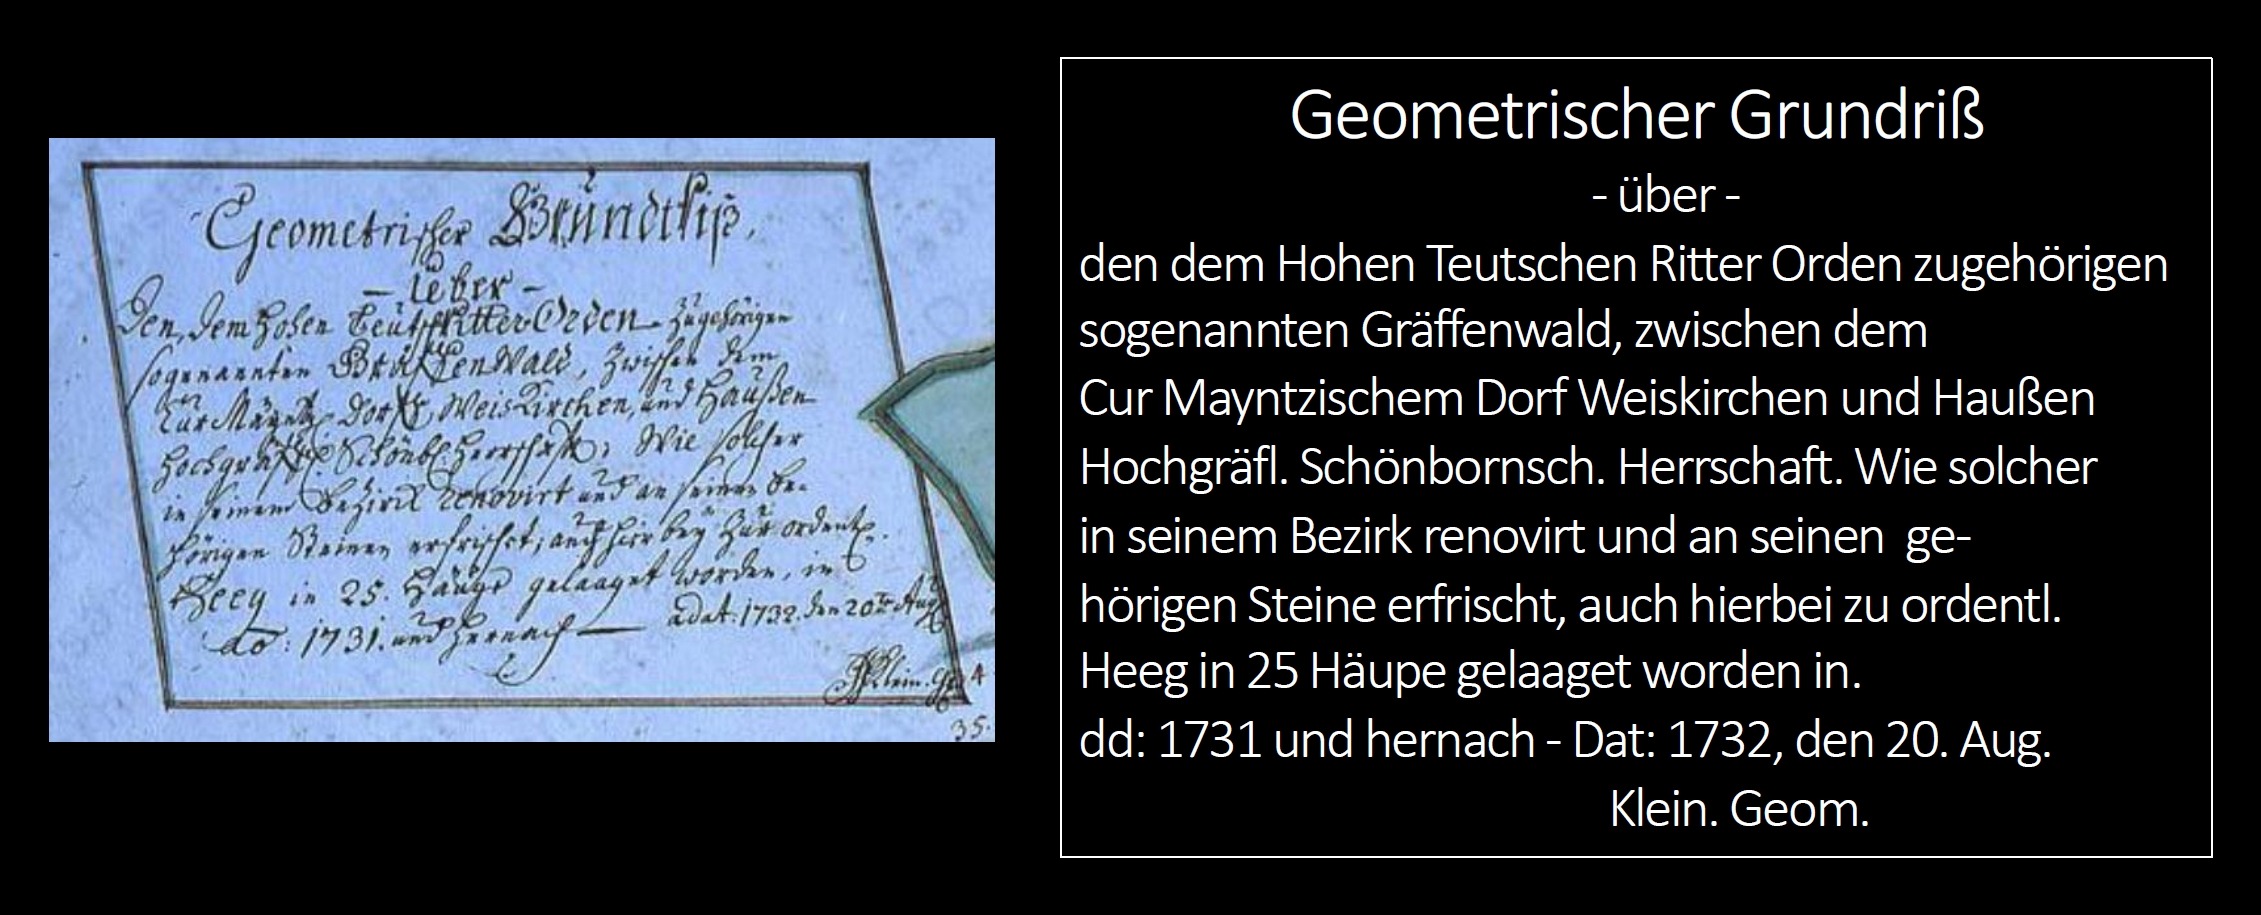 Legende von Geometer Klein zur Karte vom Gräfenwald.